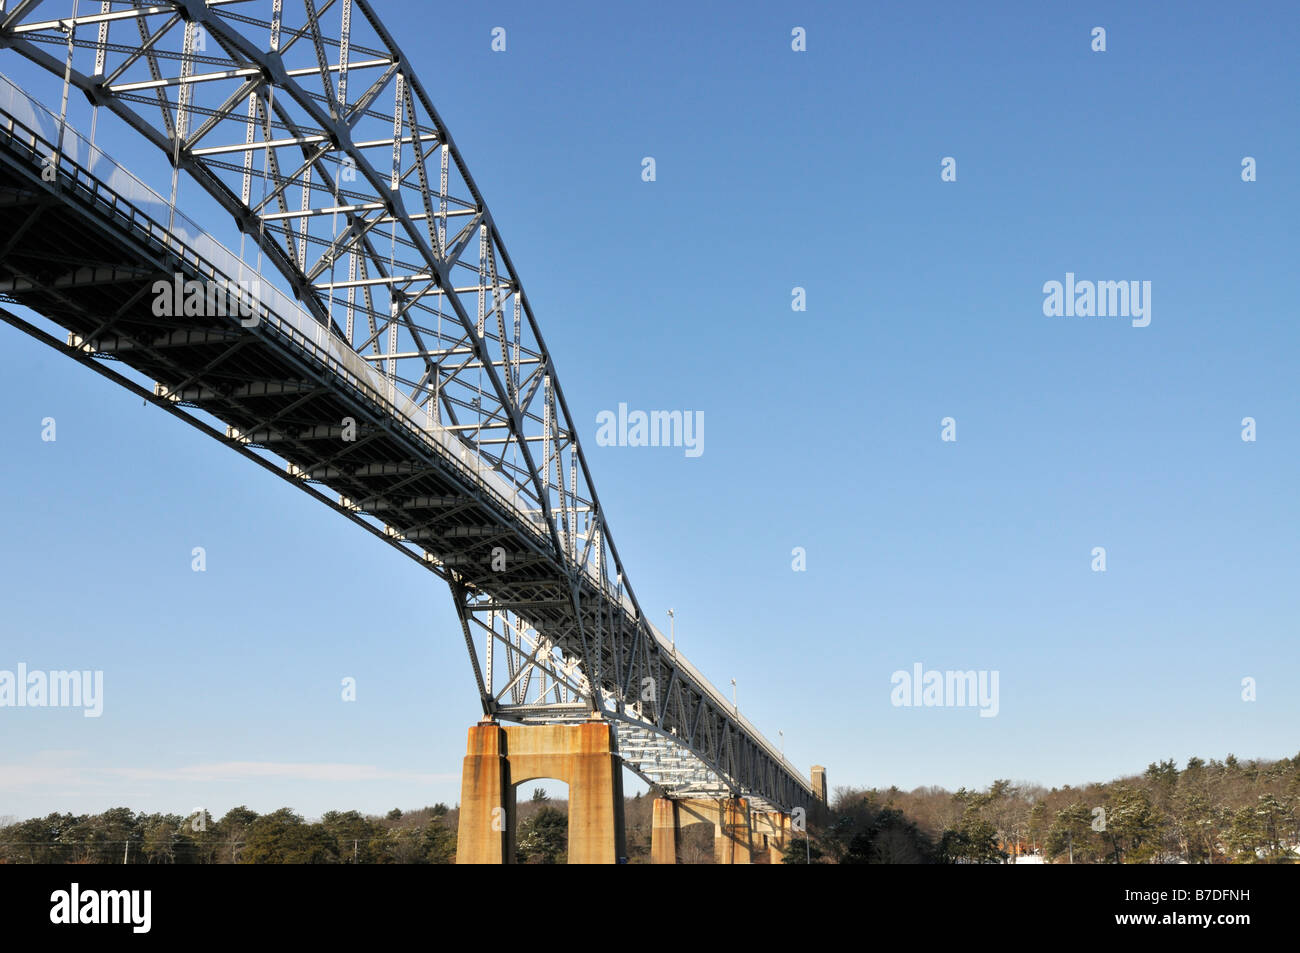 Ansicht der Stahlbrücke von unten Strahlen Winkel konkrete Unterstützung Traversen in einem abstrakten Grafikstil Bourne Brücke zeigen Stockfoto